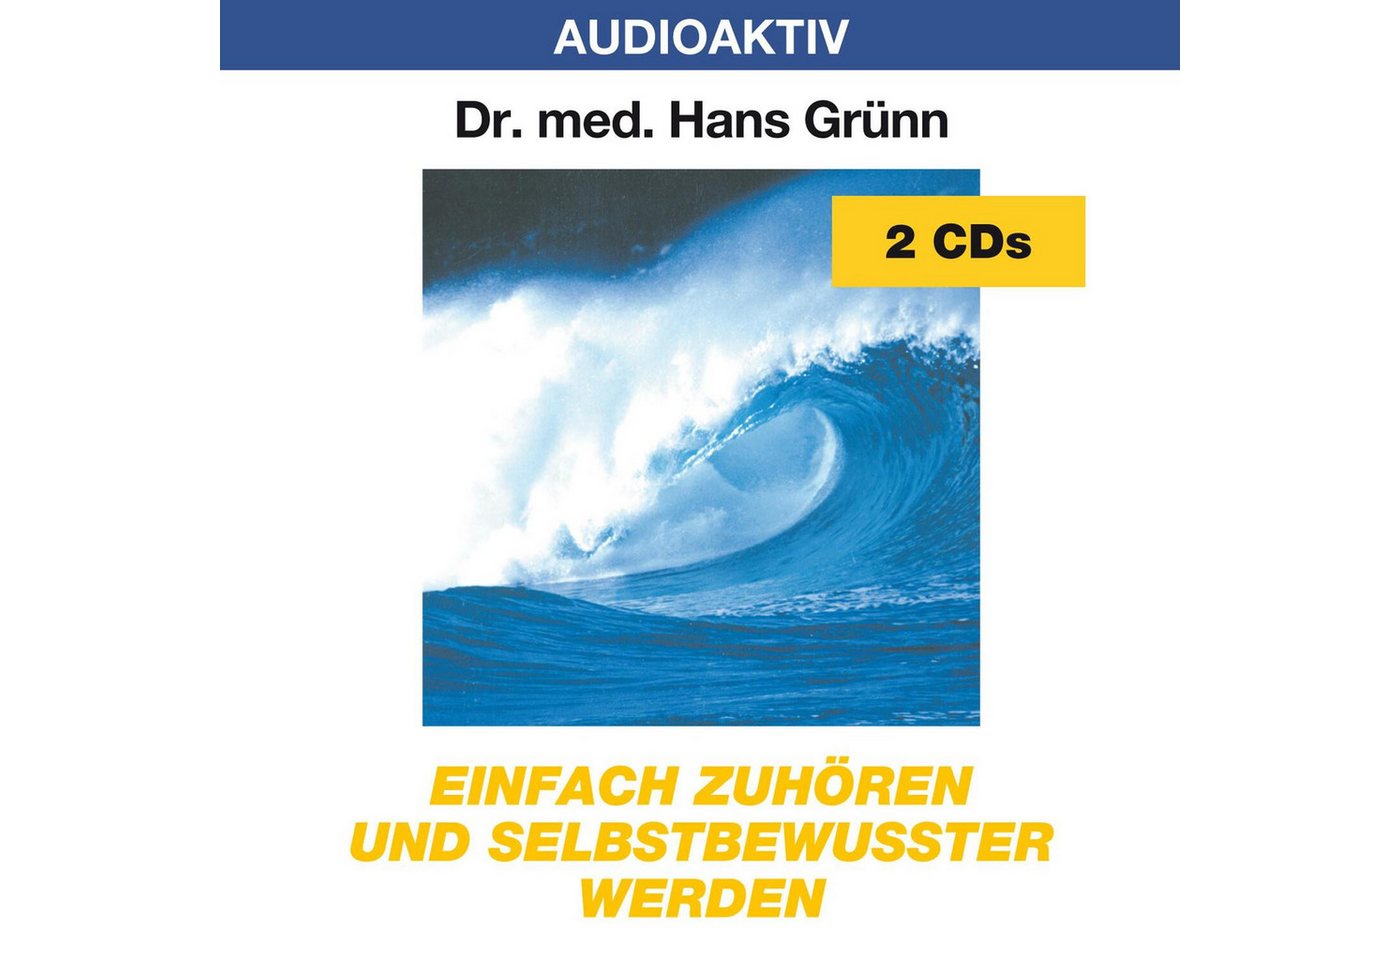 Media Verlag Hörspiel Einfach zuhören und selbstbewußter werden. 2 CDs von Media Verlag